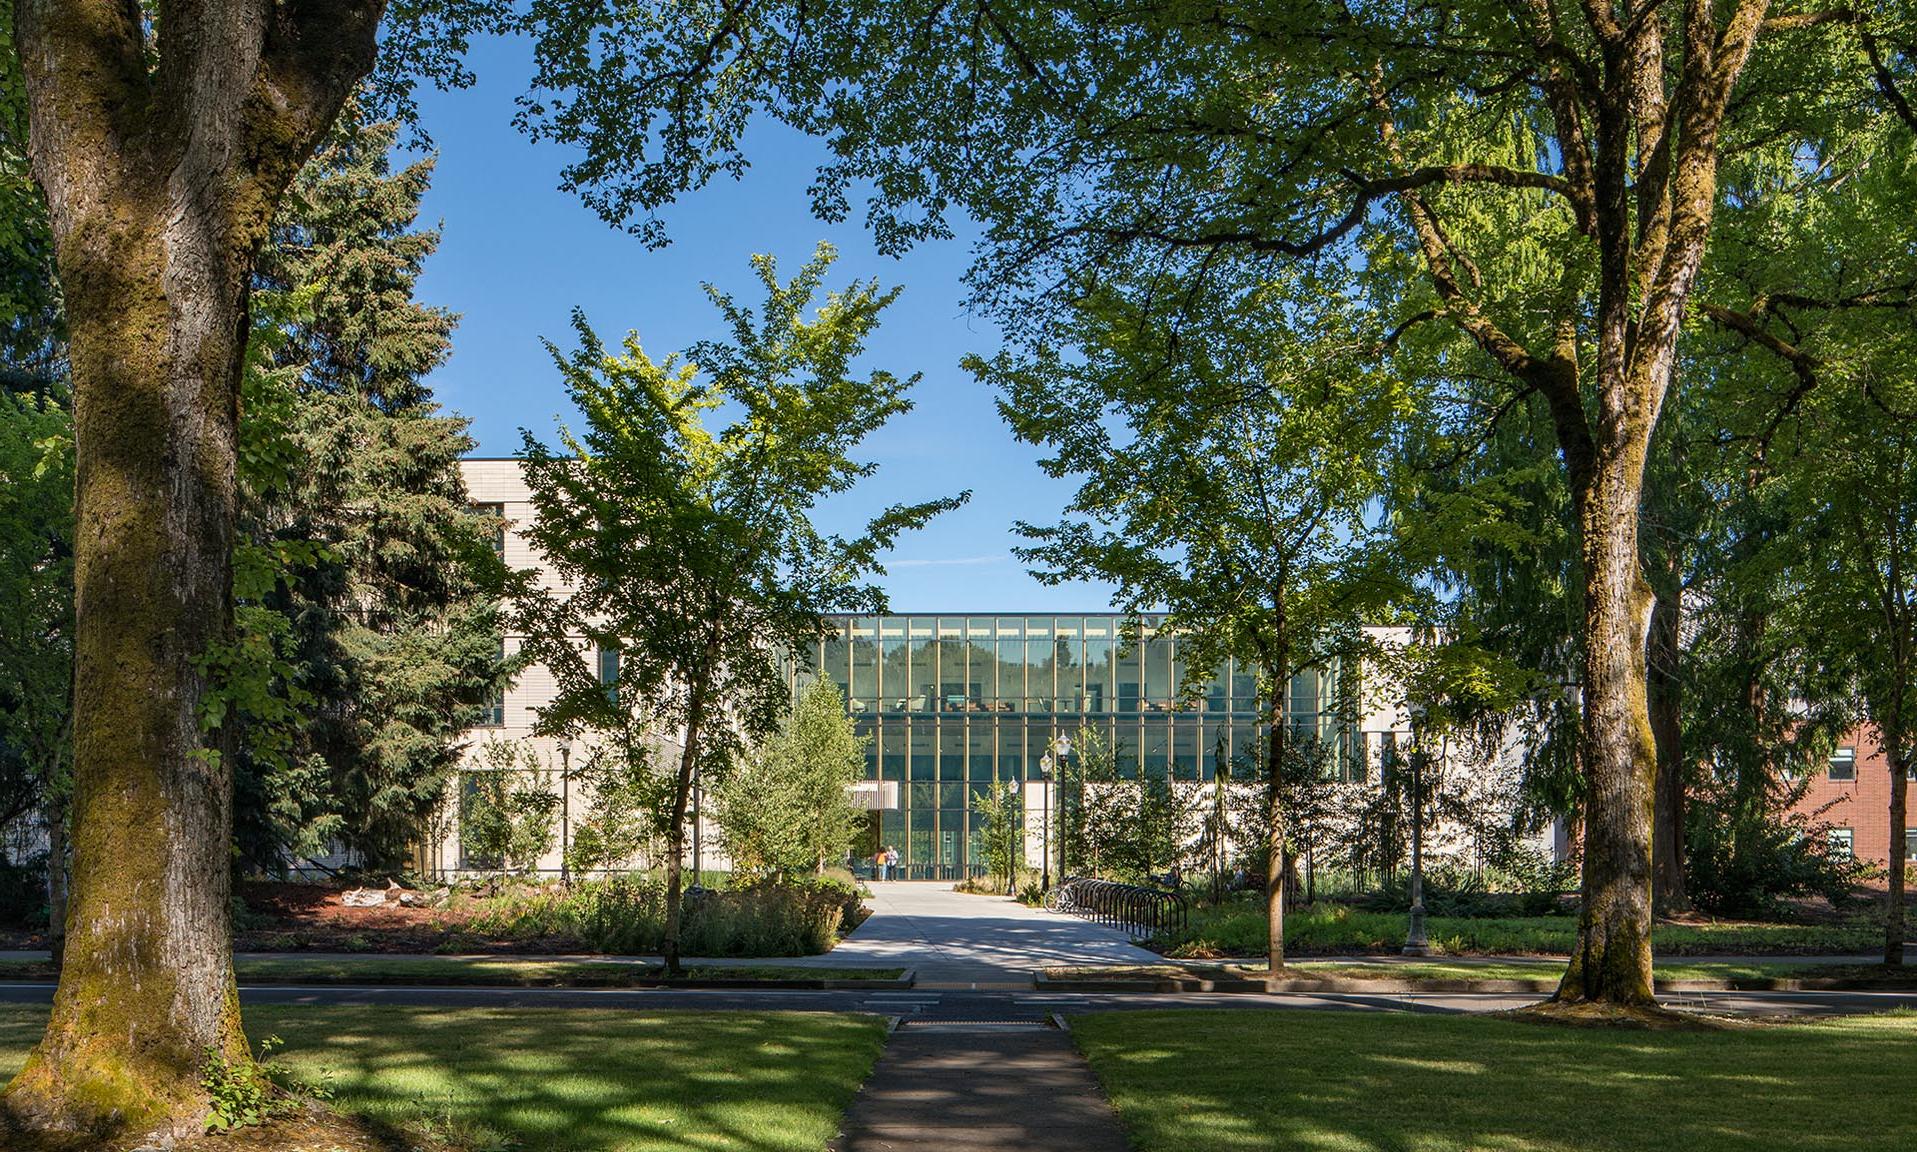 俄勒冈州立大学森林科学综合大楼通过树木的外部视图